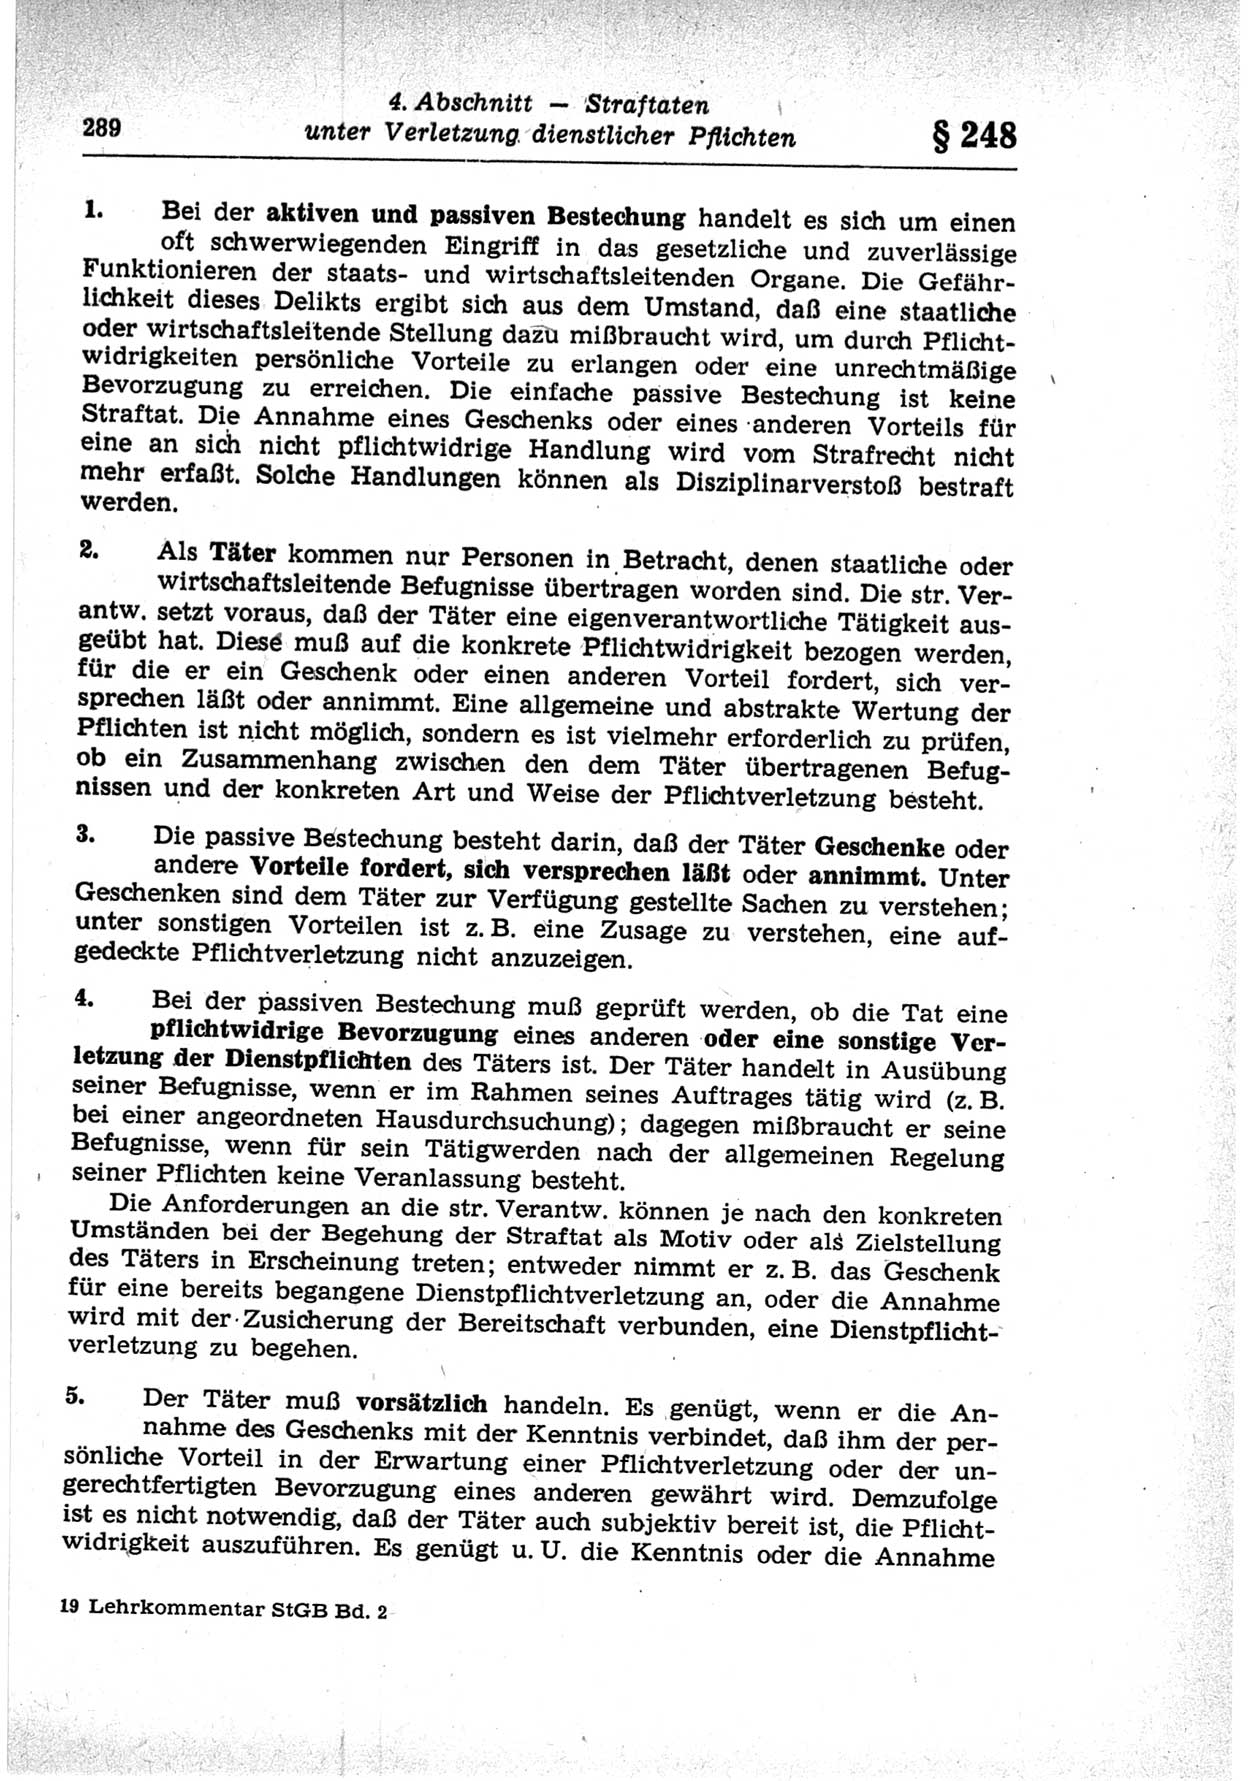 Strafrecht der Deutschen Demokratischen Republik (DDR), Lehrkommentar zum Strafgesetzbuch (StGB), Besonderer Teil 1969, Seite 289 (Strafr. DDR Lehrkomm. StGB BT 1969, S. 289)